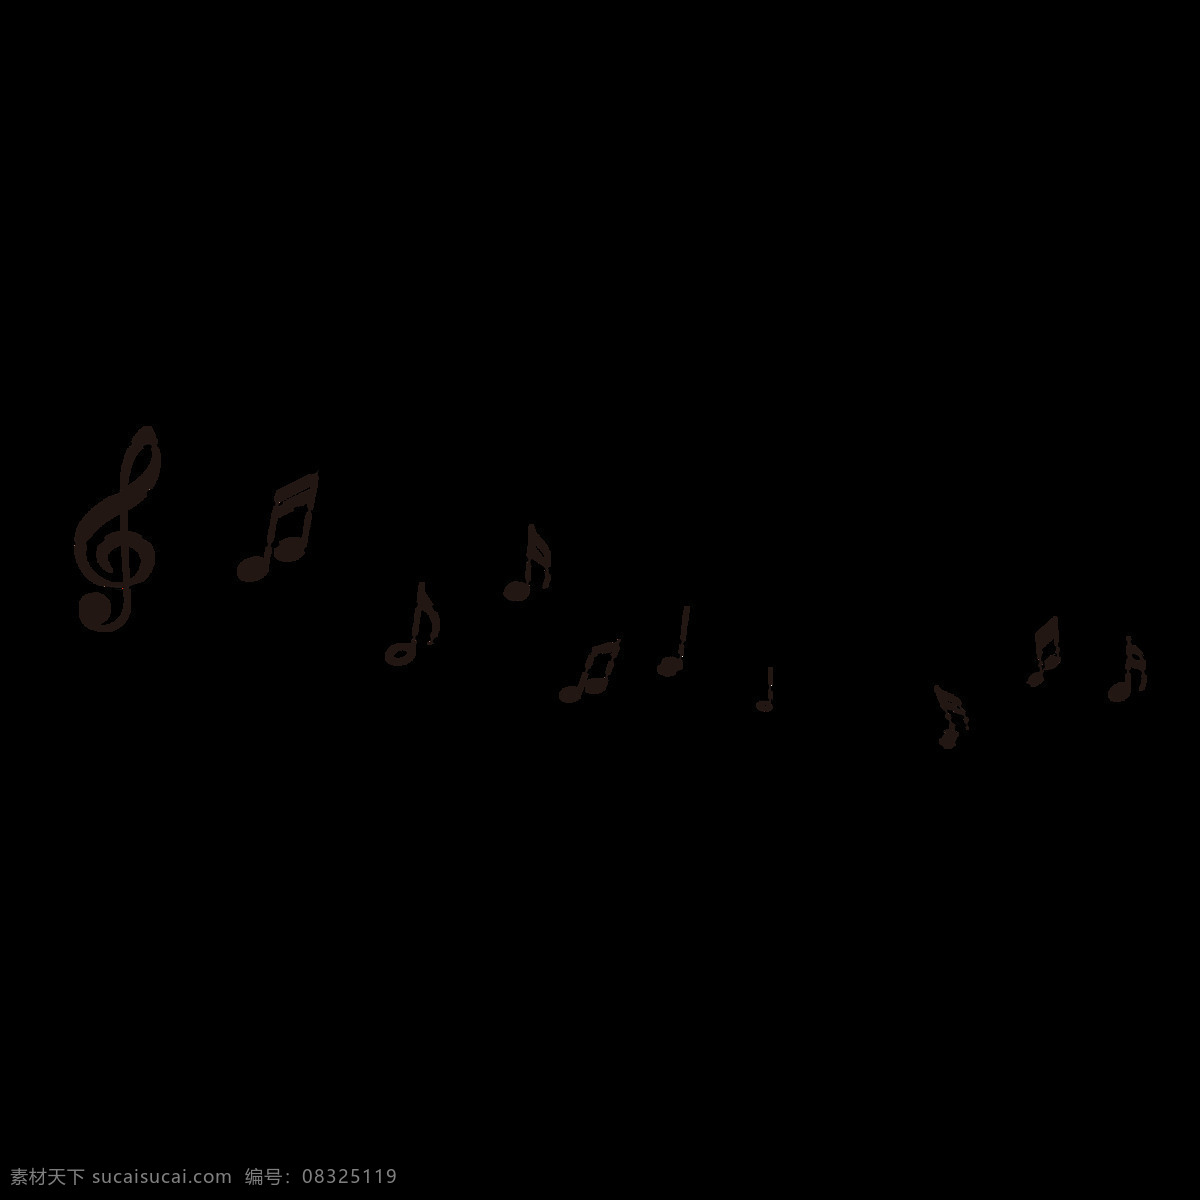 音符免抠素材 音符素材 矢量音符 动感音符 动感 音乐 旋律 乐章 乐谱 韵律 符号 音乐标 音标 音 音符旋律 各种音符 音符设计 音乐符号 音标素材 艺术音符标志 创意素材 五线谱 跃动的音符 炫彩音乐 动感地带 动感音乐 流淌的音符 音符剪影 黑色音符 免扣素材 标志图标 其他图标